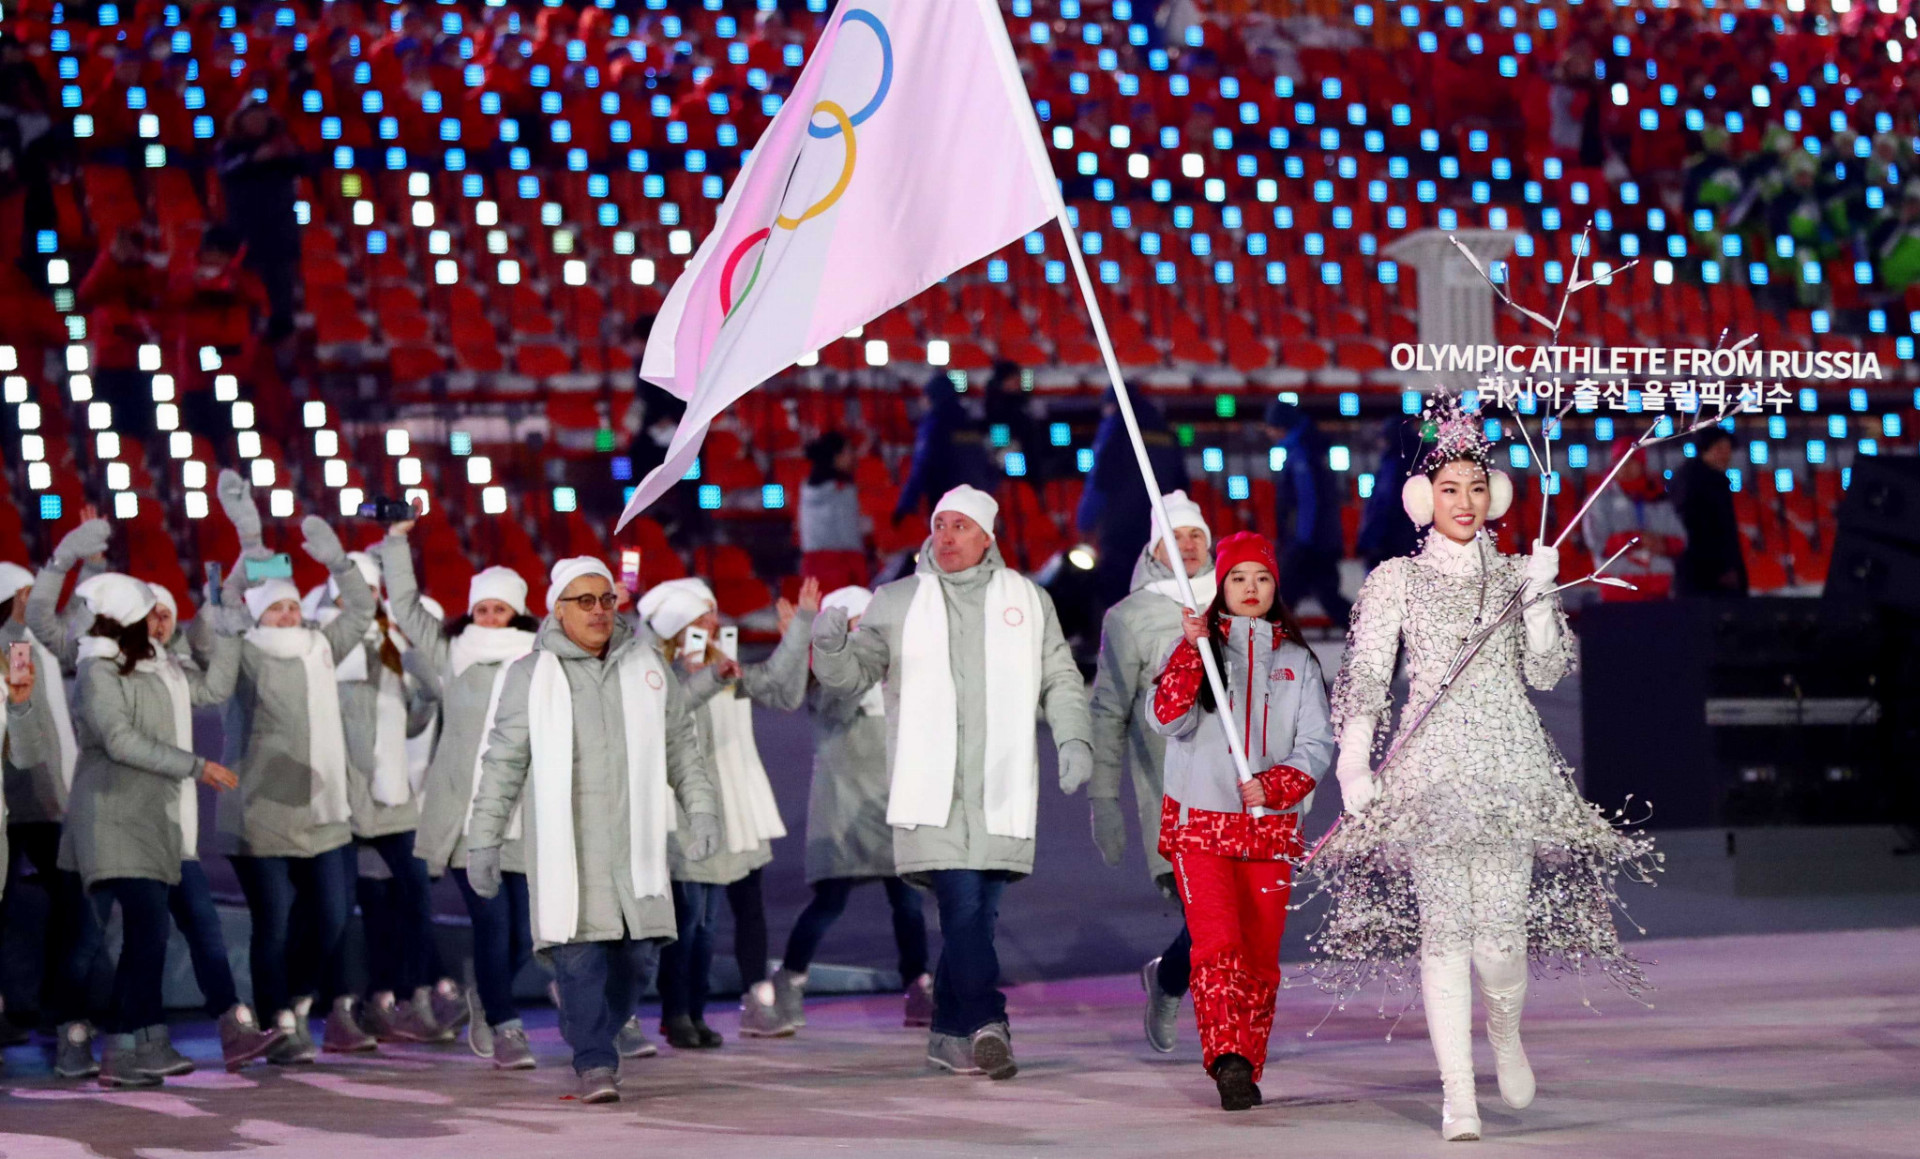 Ruskí reprezentanti v dôsledku dopingového škandálu nastúpili pod hlavičkou tímu "Olympijskí športovci z Ruska" a namiesto národnej vlajky korzovali s olympijskou vlajkou, ktorú niesla dobrovoľníčka.